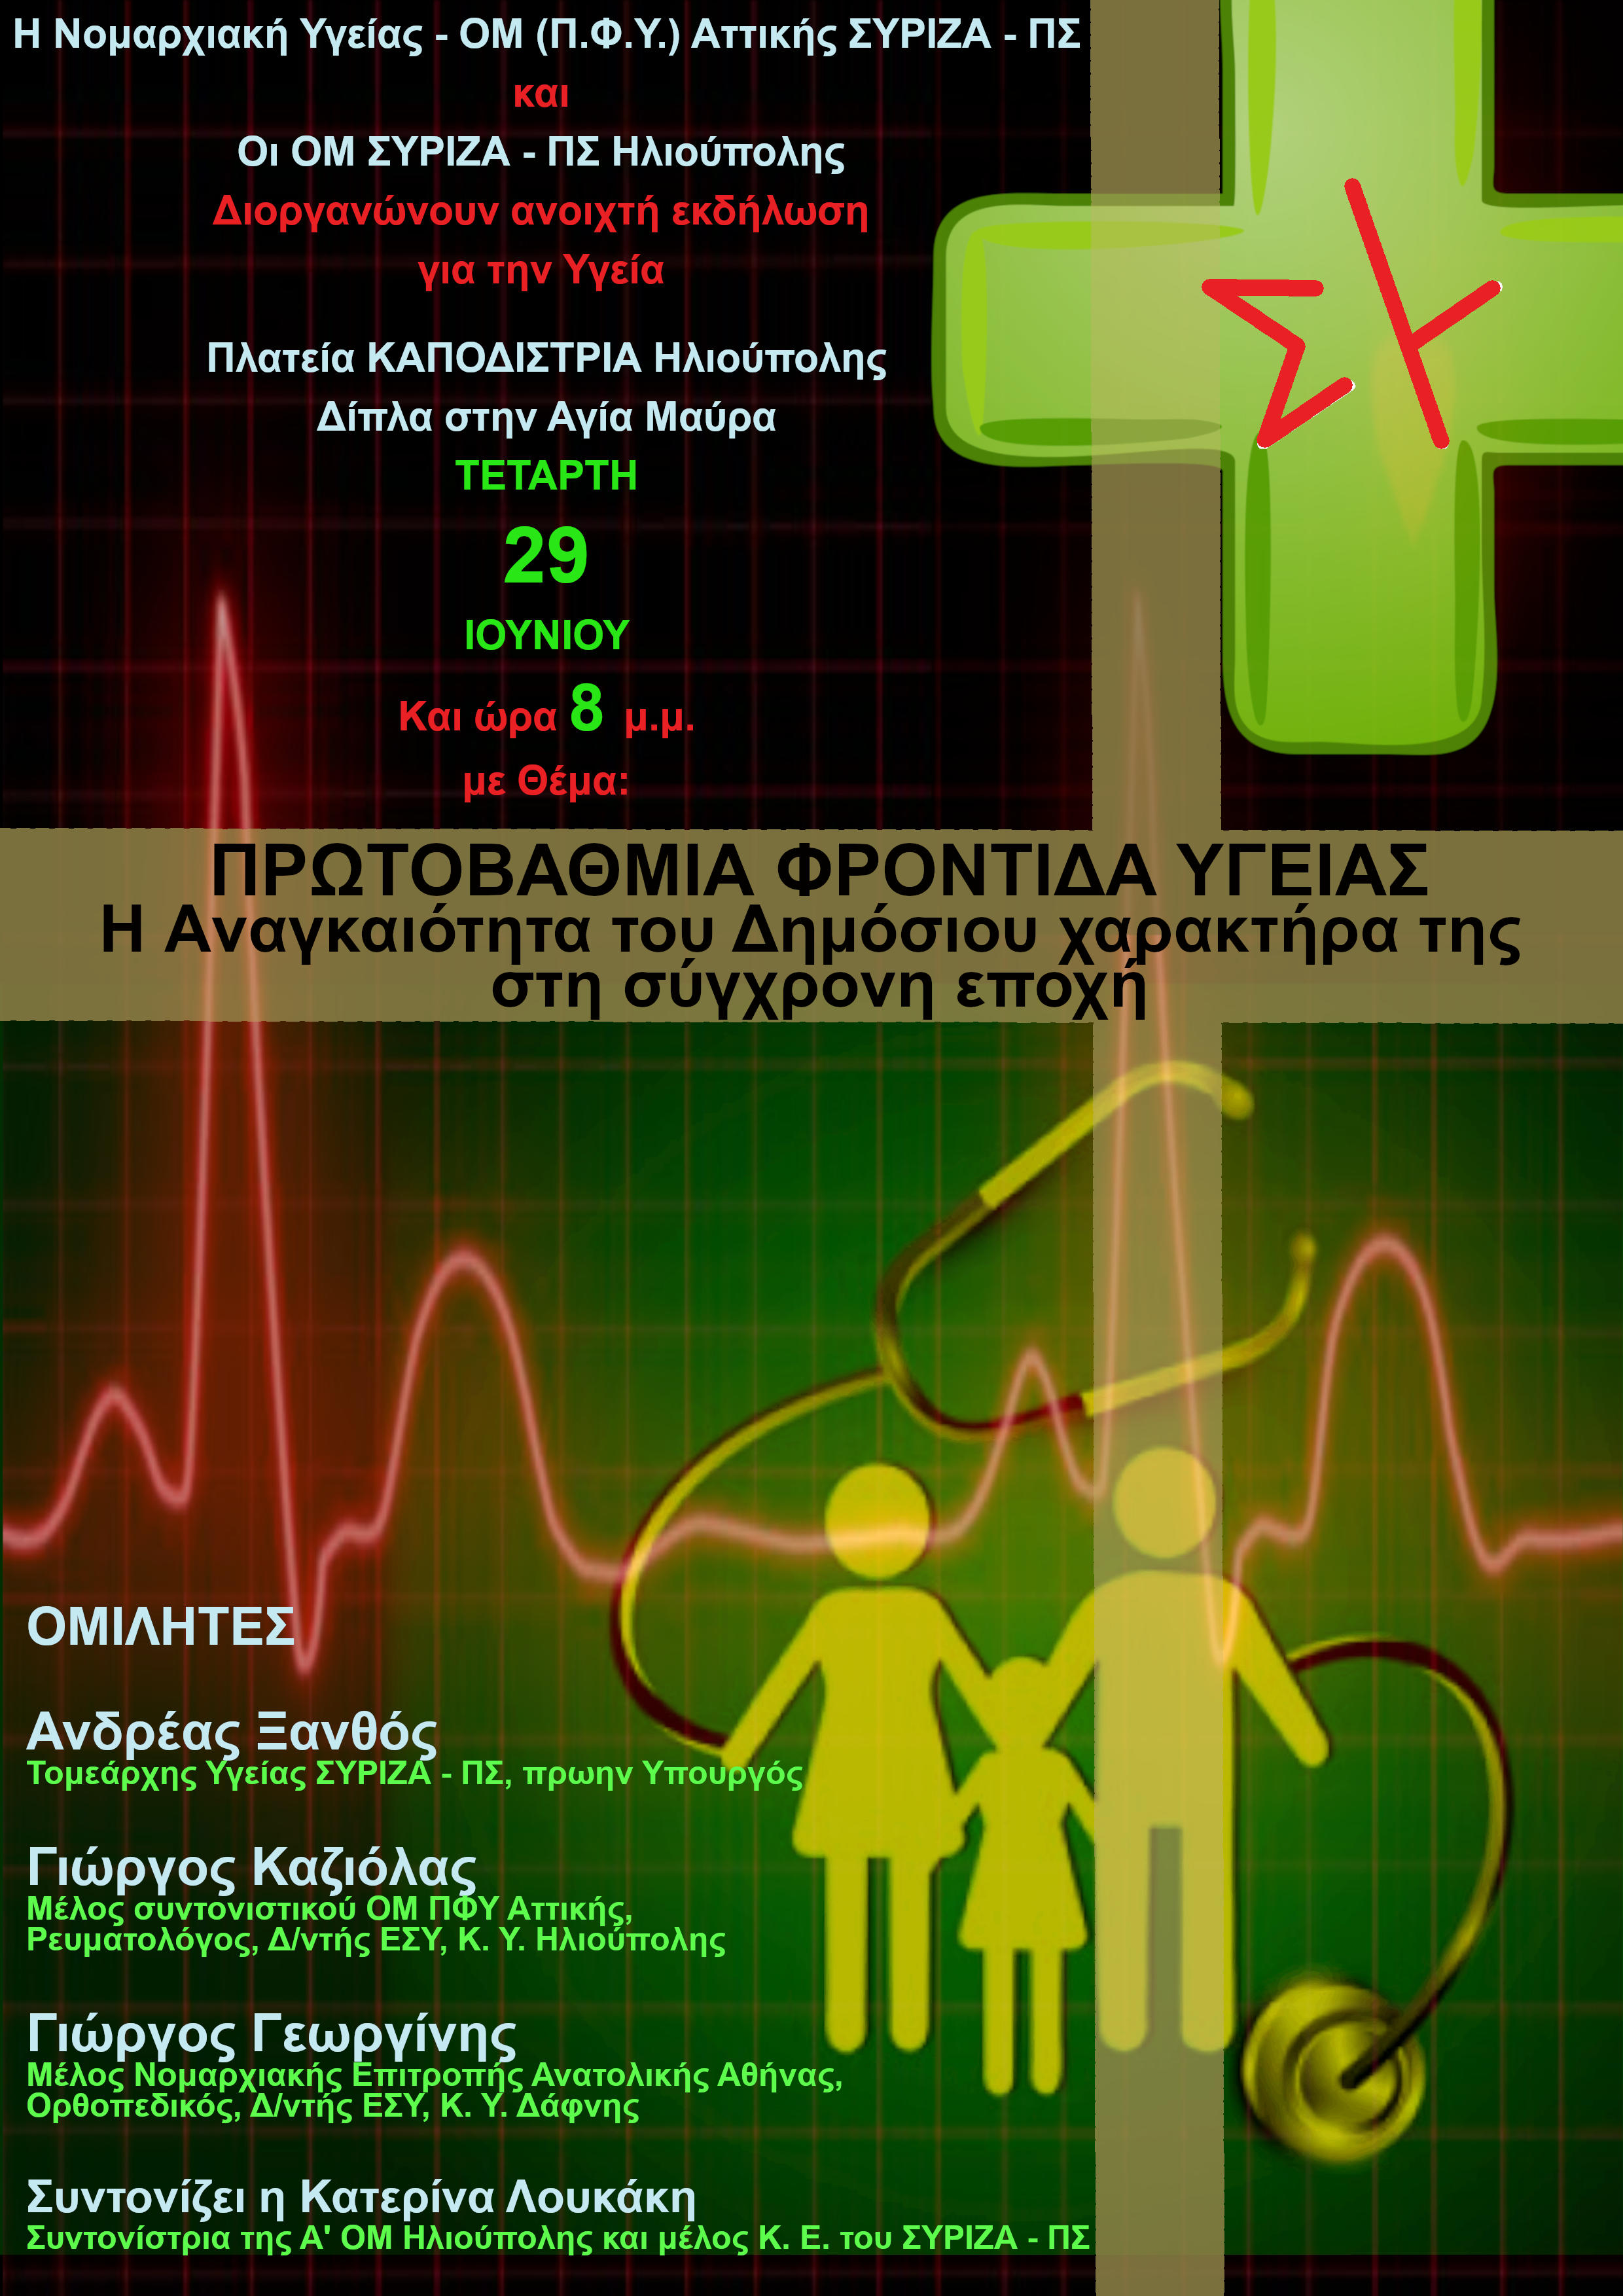 Εκδήλωση της Νομαρχιακής Υγείας Αττικής και των ΟΜ ΣΥΡΙΖΑ-ΠΣ Ηλιούπολης για την Πρωτοβάθμια Φροντίδα Υγείας